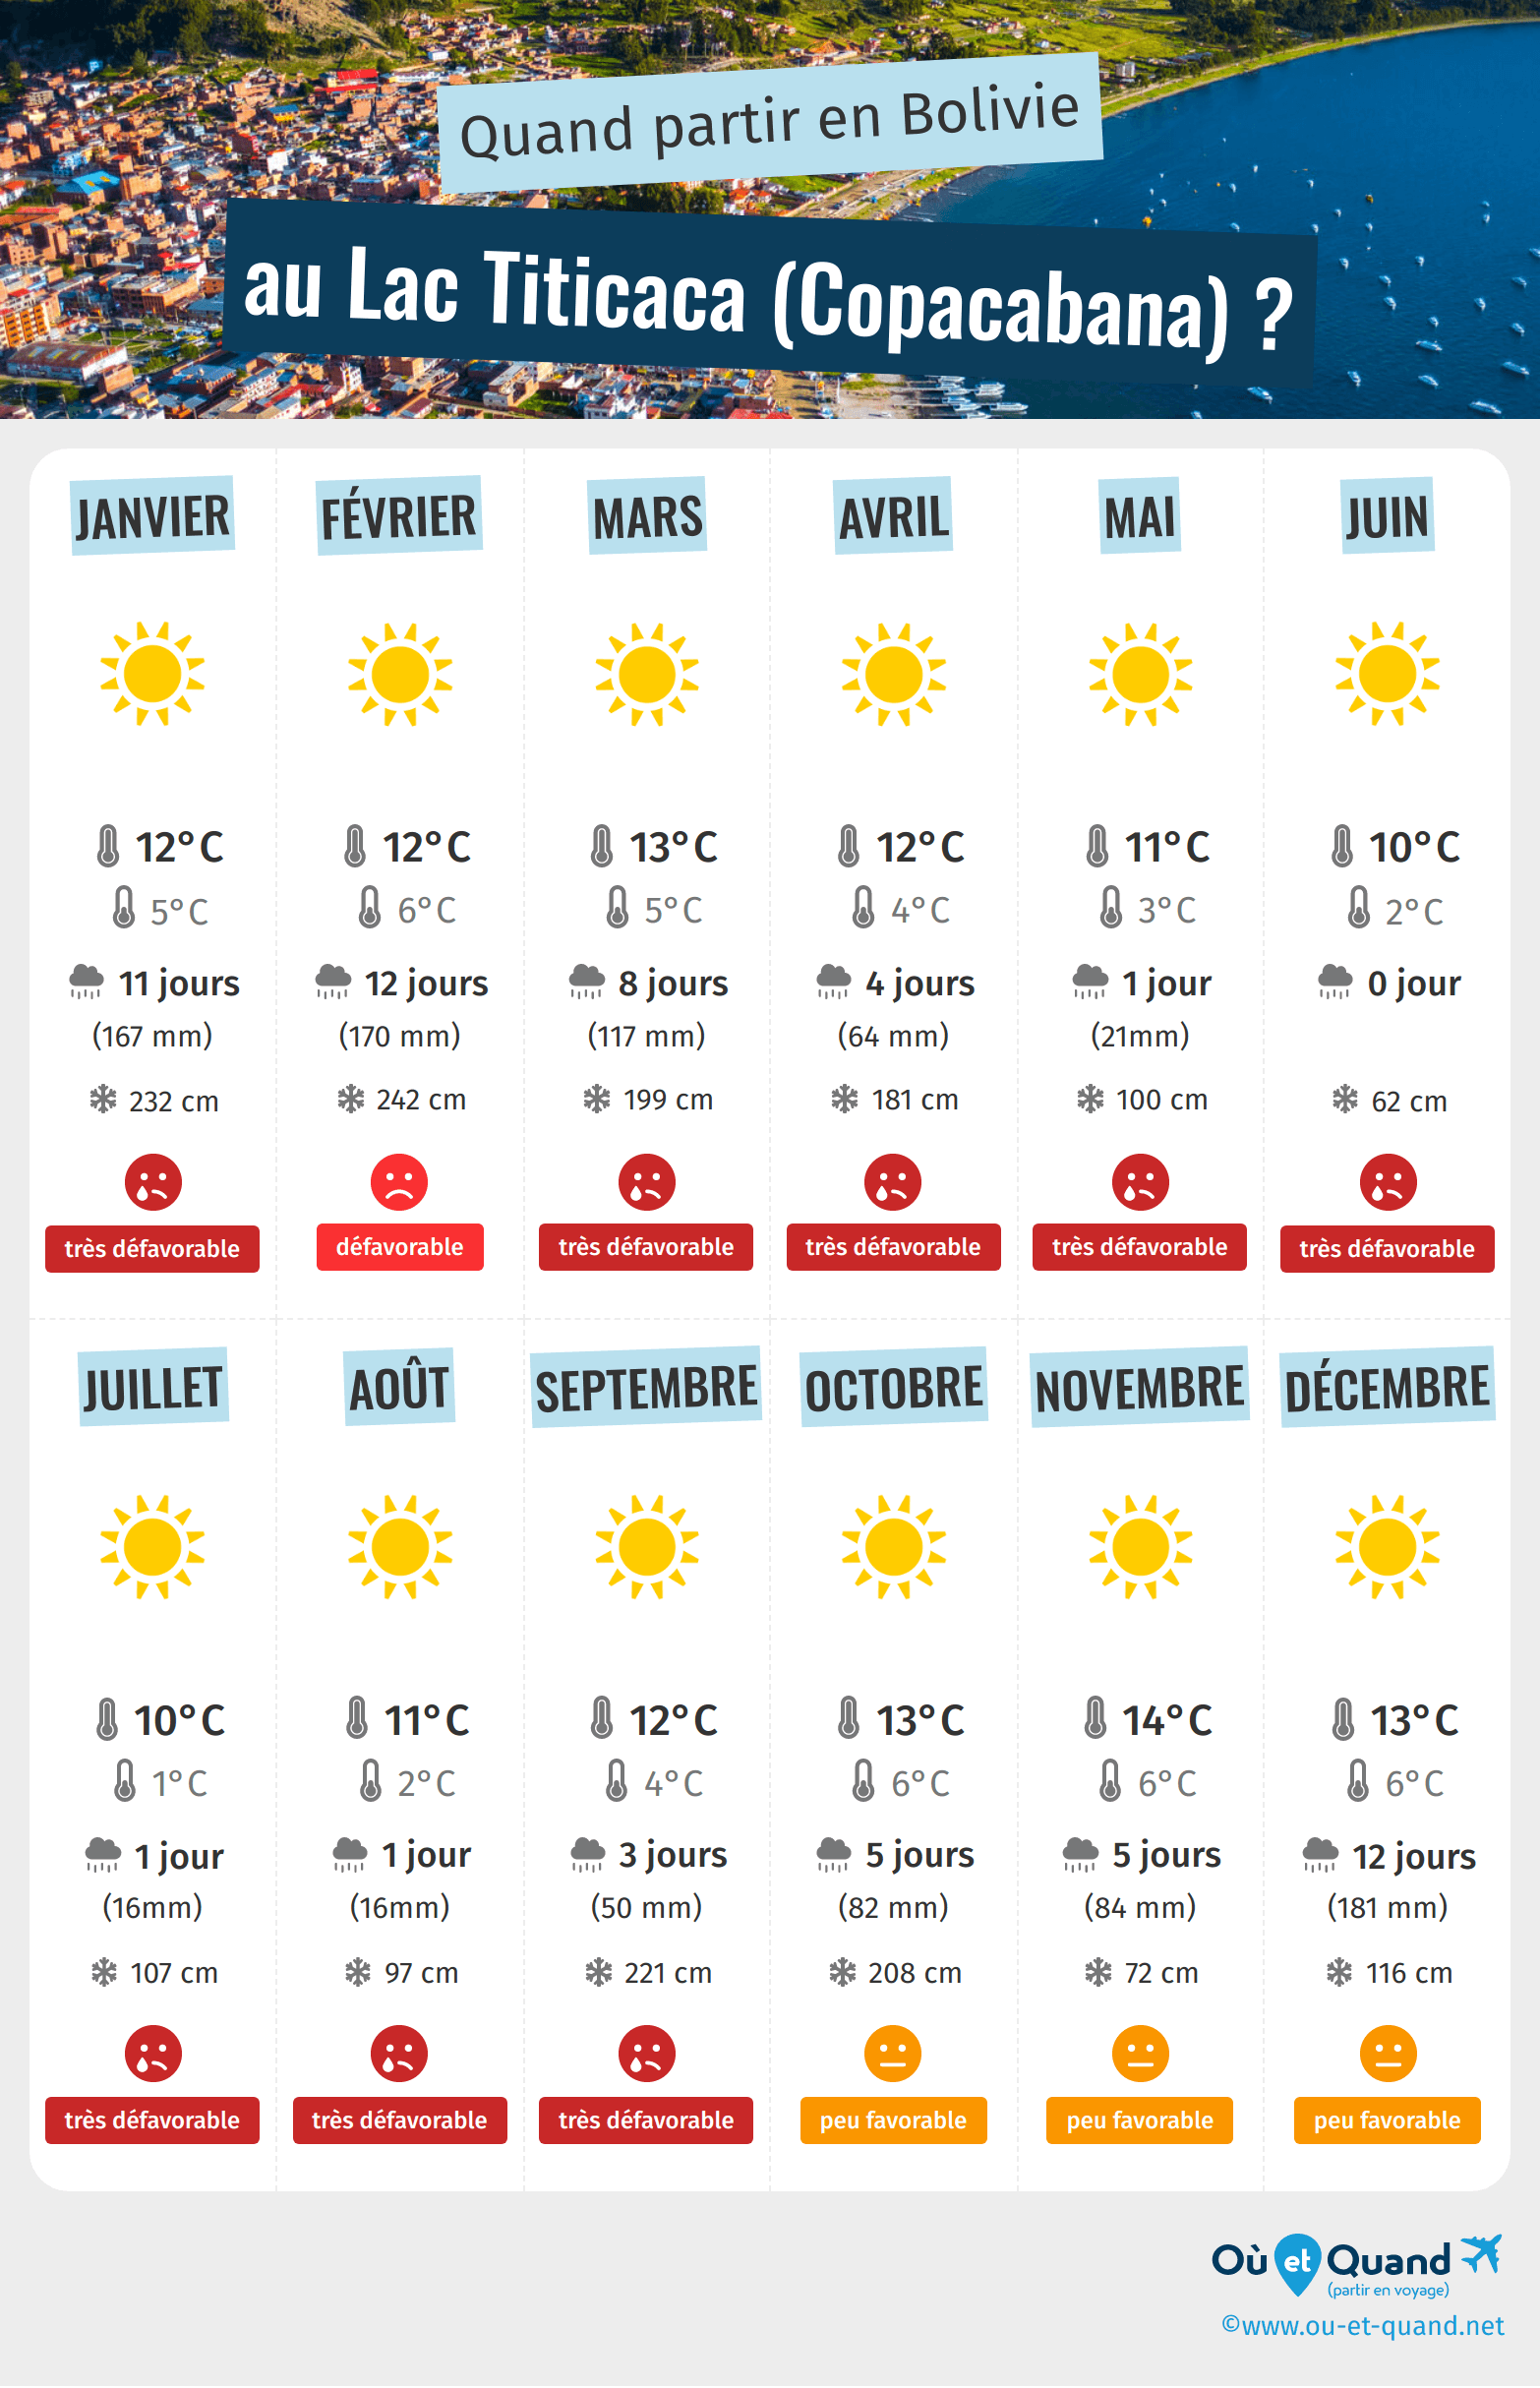 Infographie des meilleures périodes pour partir au Lac Titicaca (Copacabana) : mois par mois